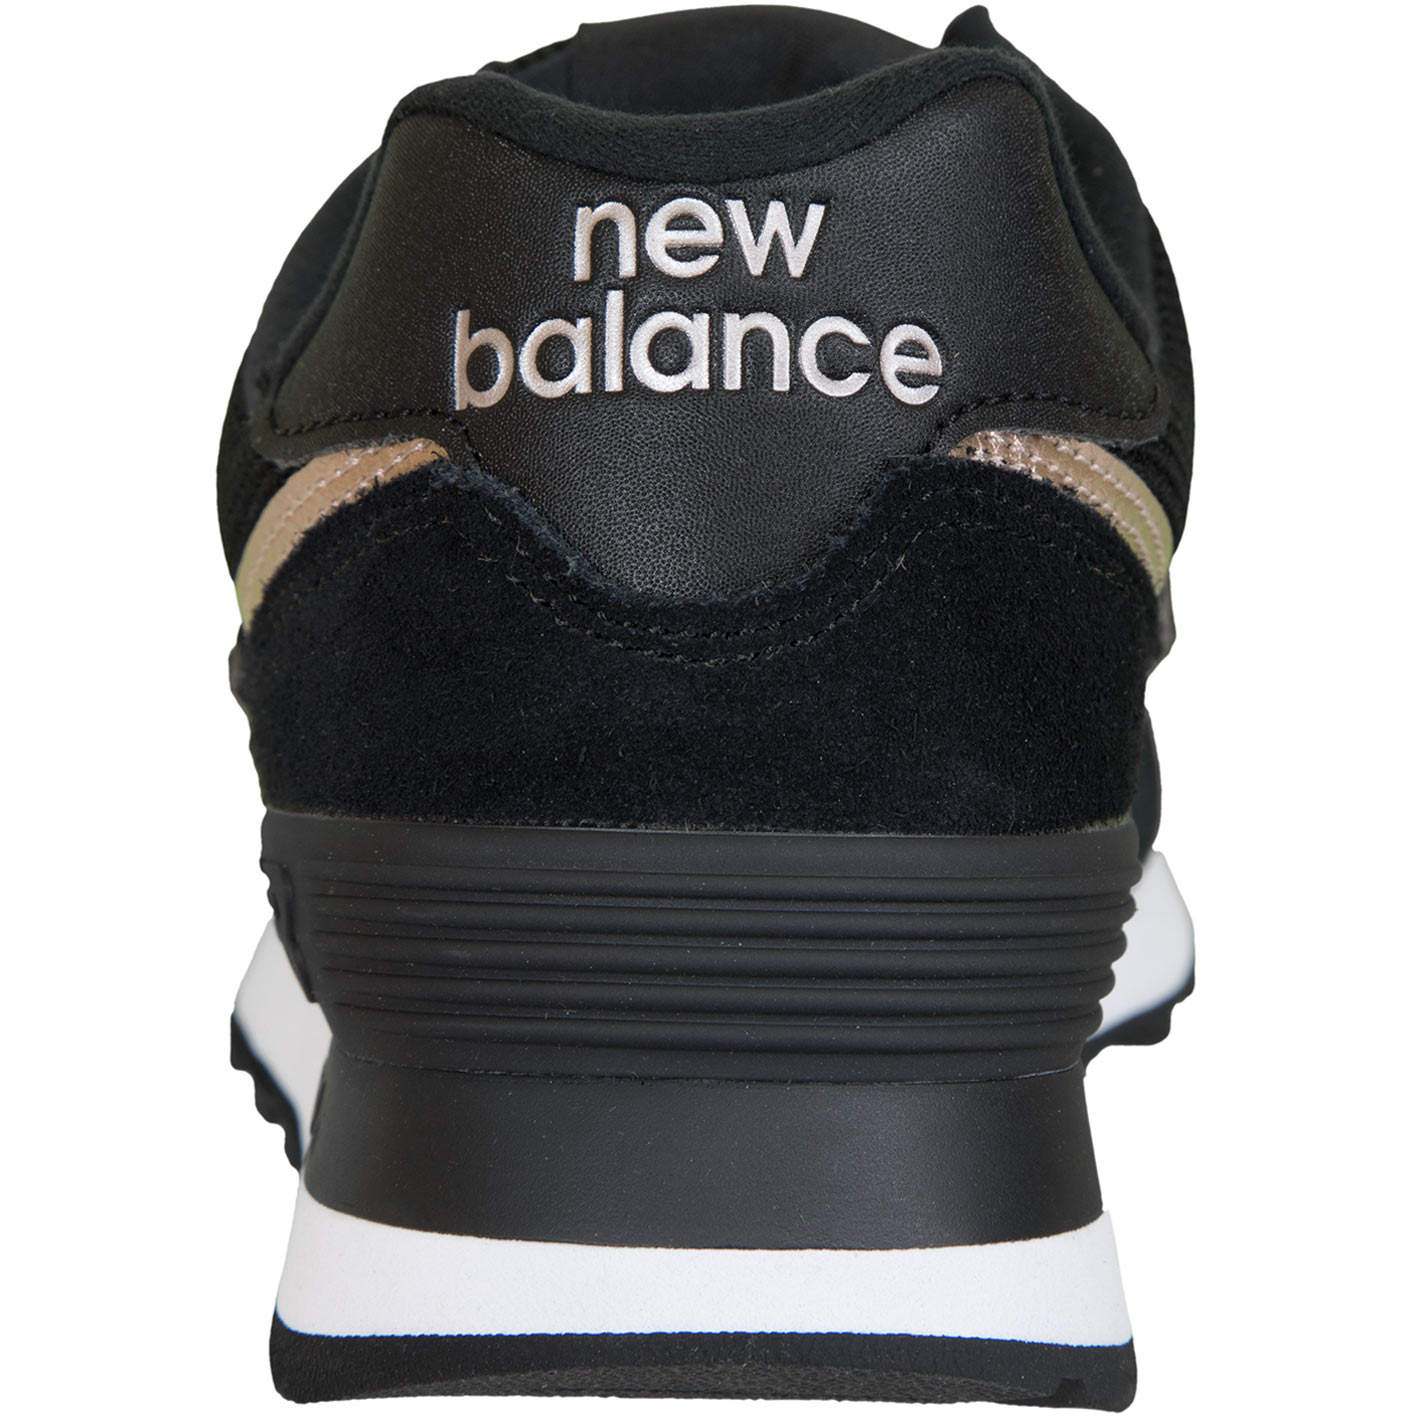 ☆ New Balance Damen Sneaker 574 Leder/Textil schwarz - hier bestellen!